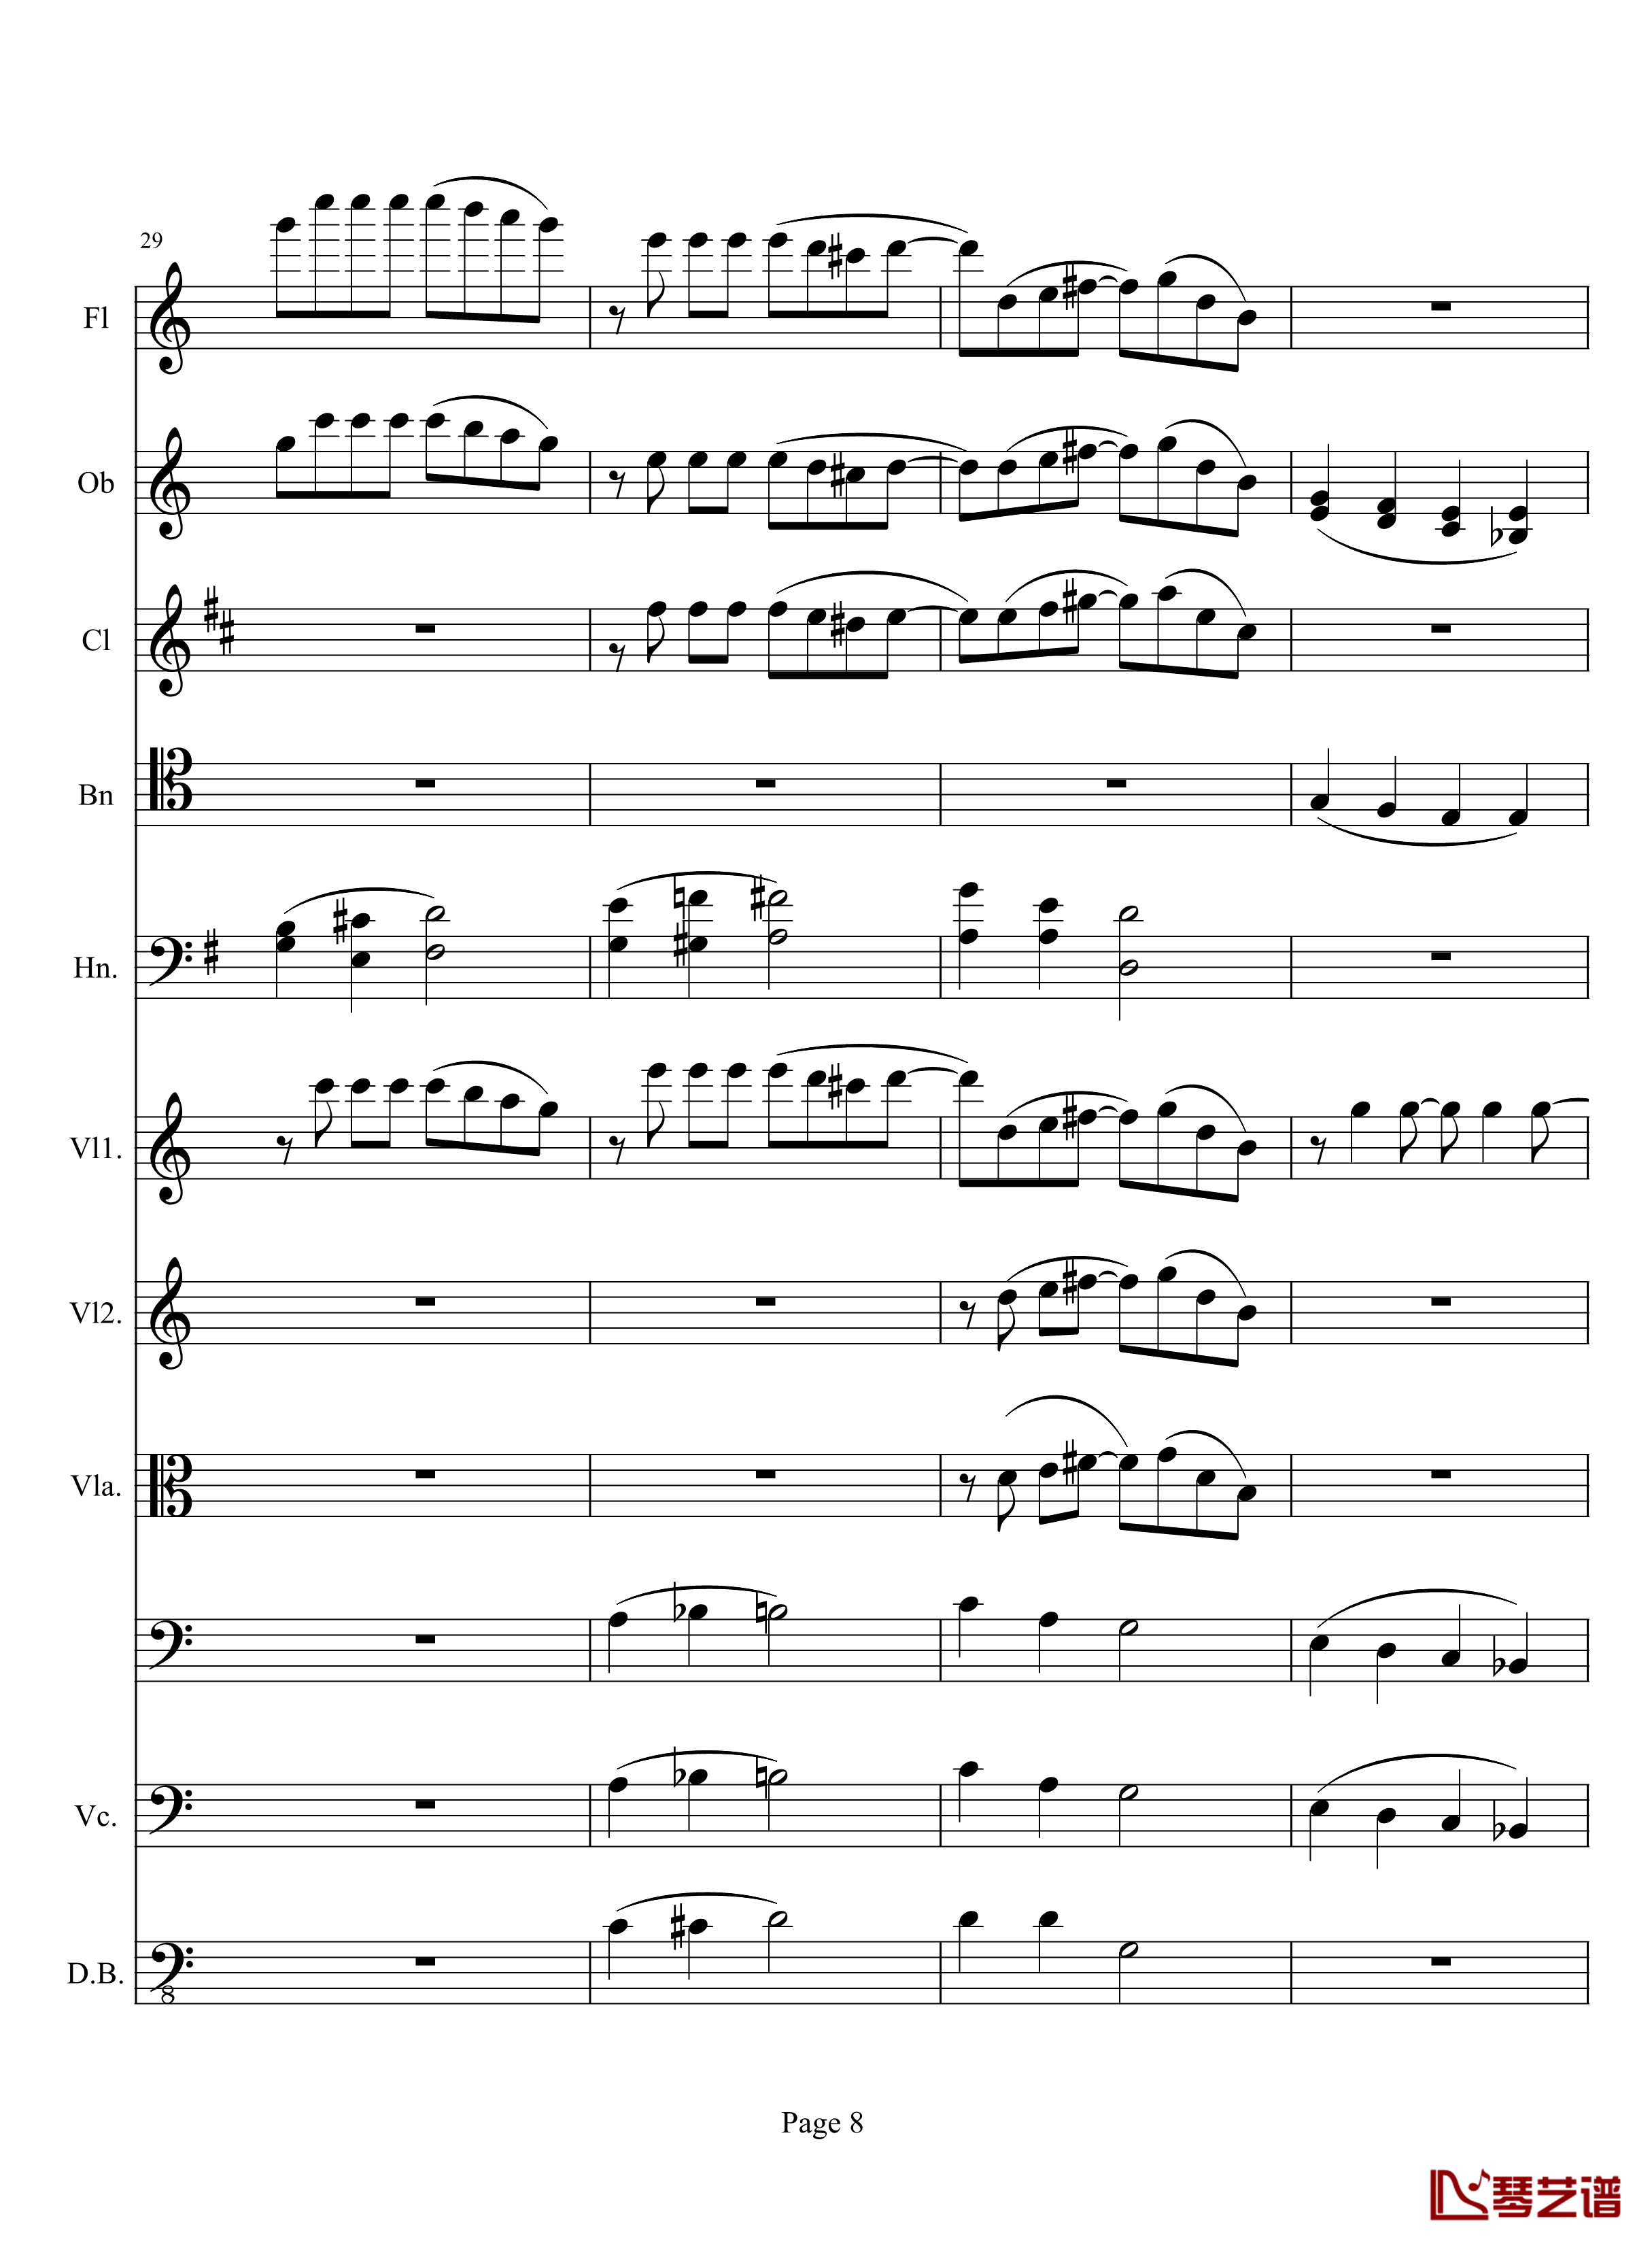 奏鸣曲之交响钢琴谱-第10首-2-贝多芬-beethoven8